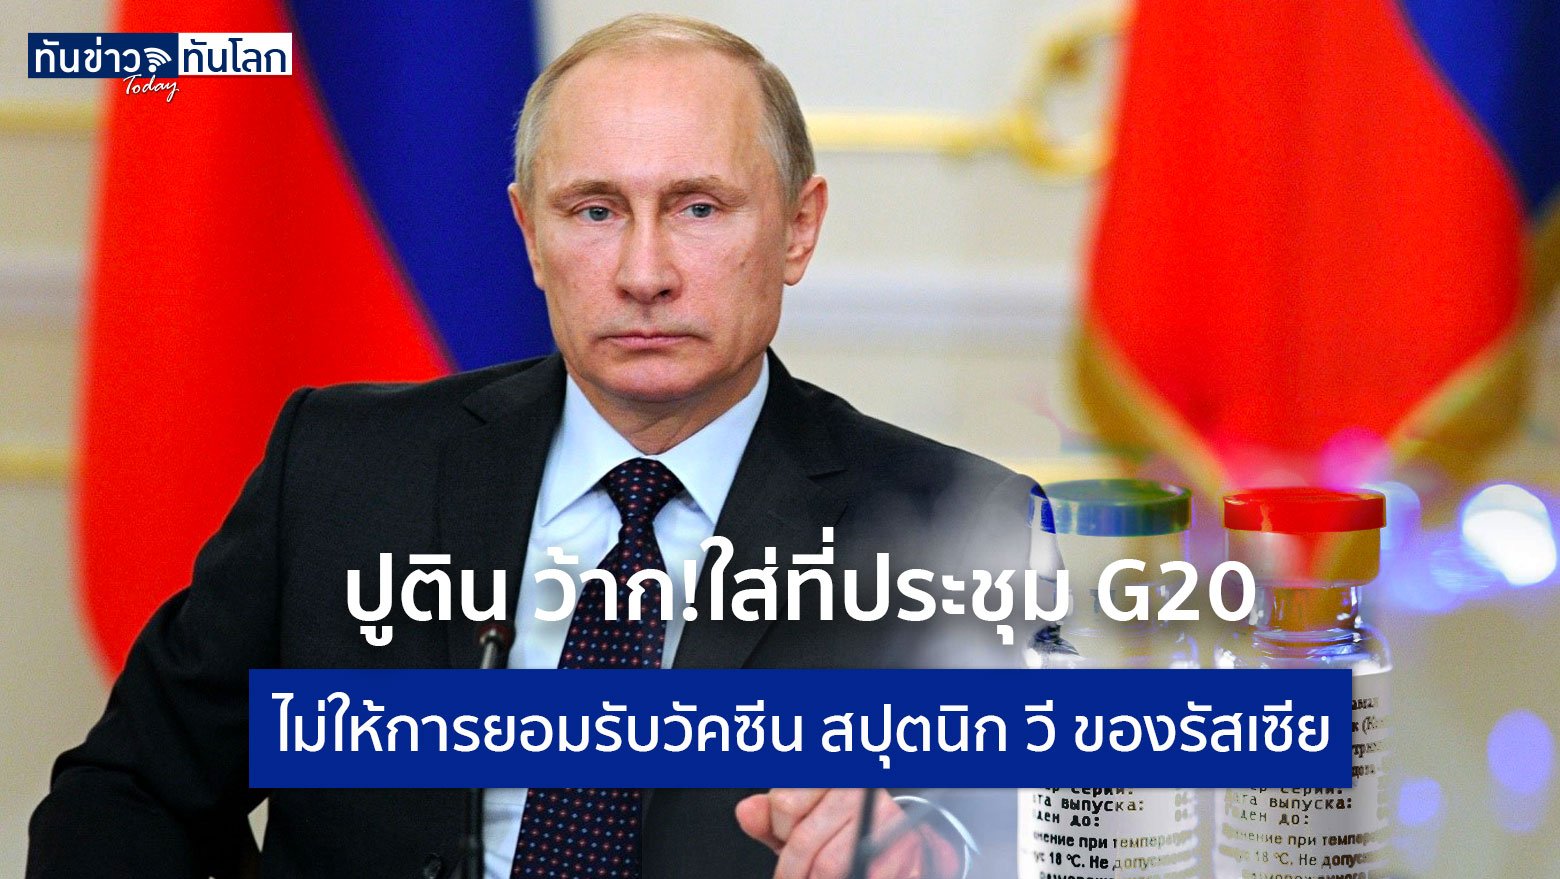 ปูติน ว้าก!ใส่ที่ประชุม G20  ไม่ให้การยอมรับวัคซีน สปุตนิก วี ของรัสเซีย